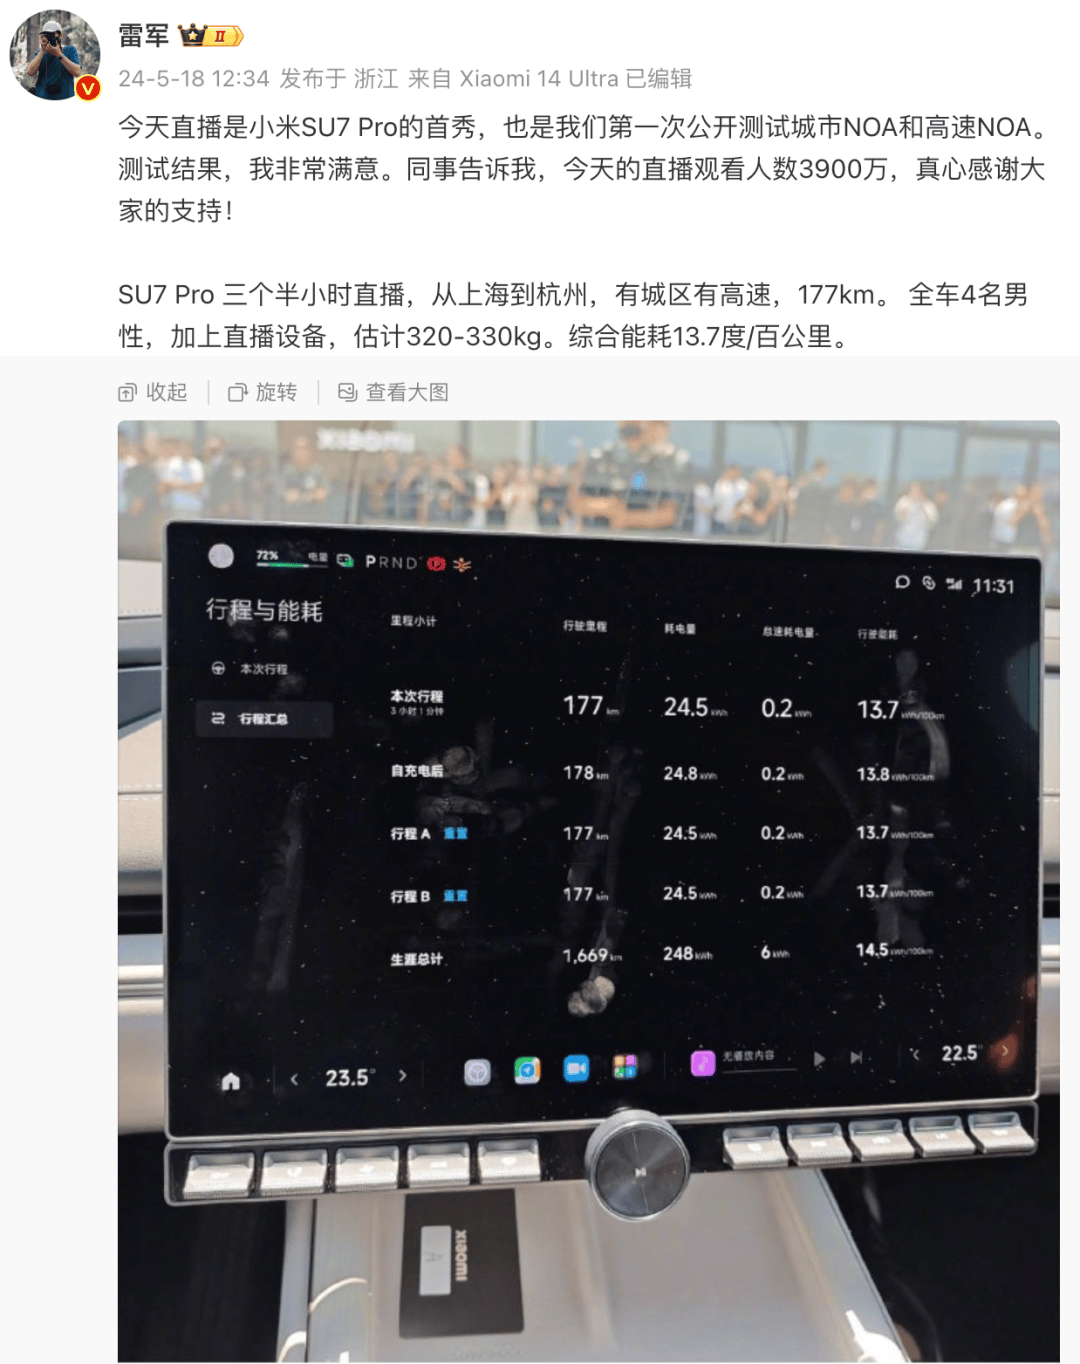 雷军再度直播 小米SU7Pro提前开启交付 | Android 15 Beta来了 小米OV已开启